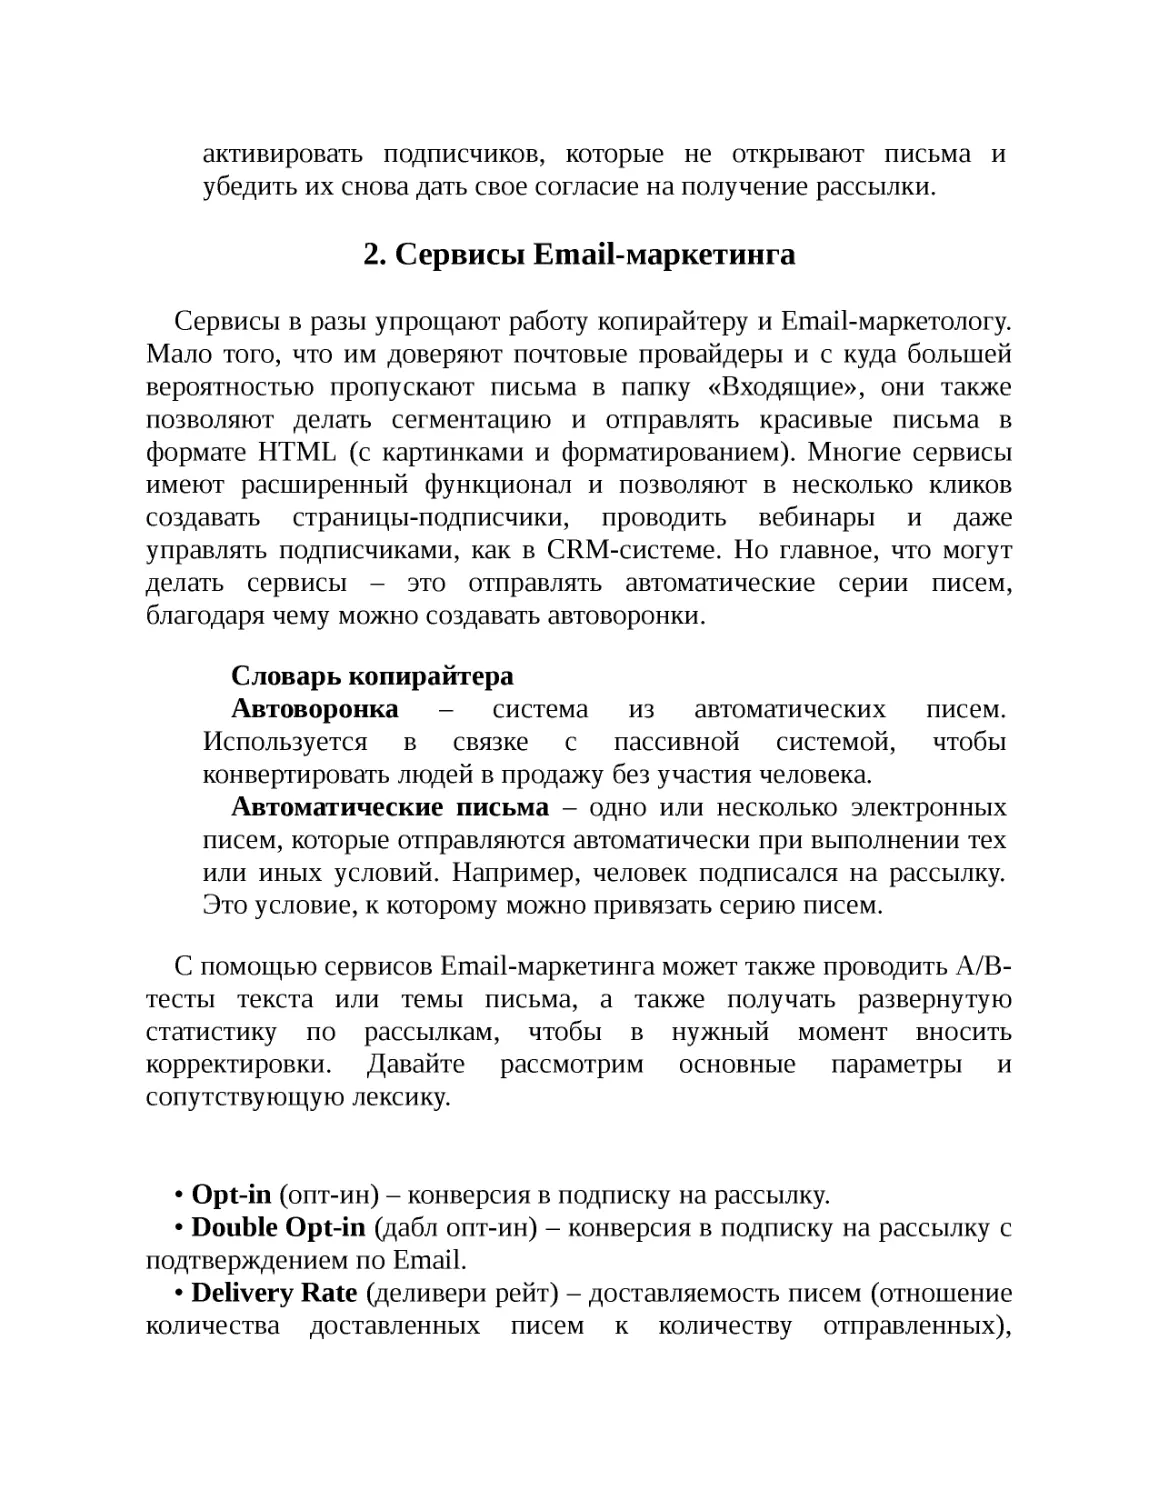 2. Сервисы Email-маркетинга